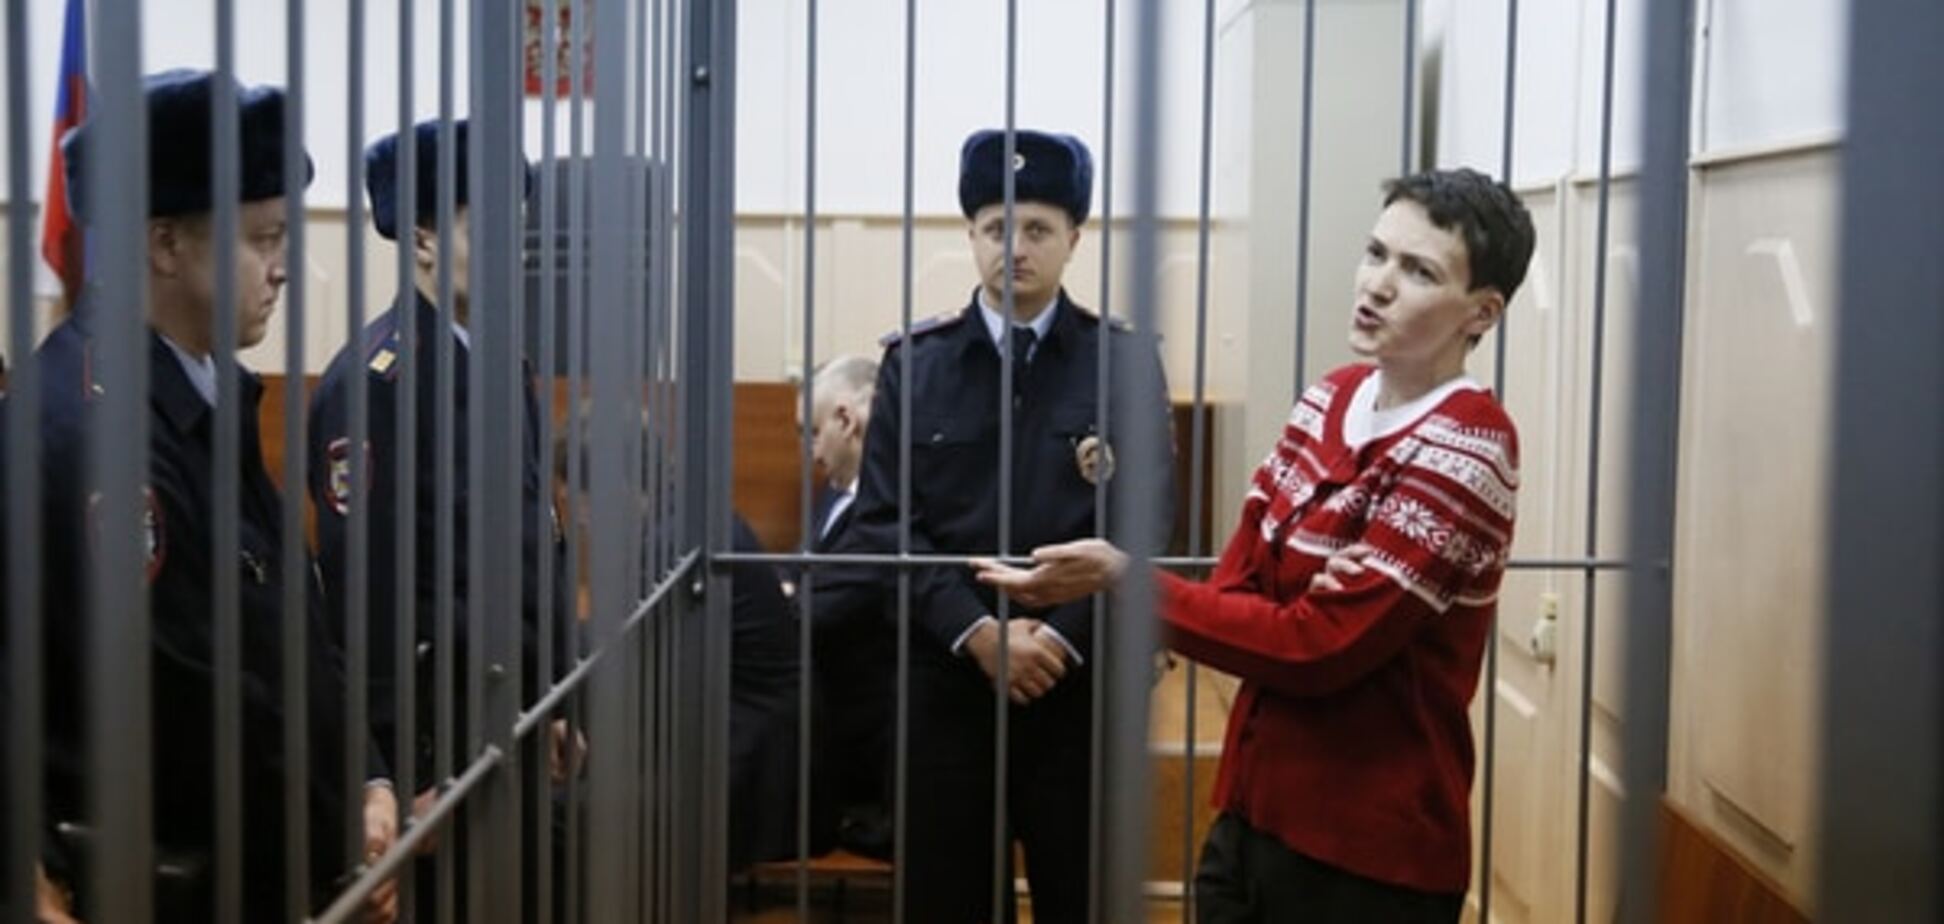 Адвокат дал прогноз по срокам завершения судилища над Савченко